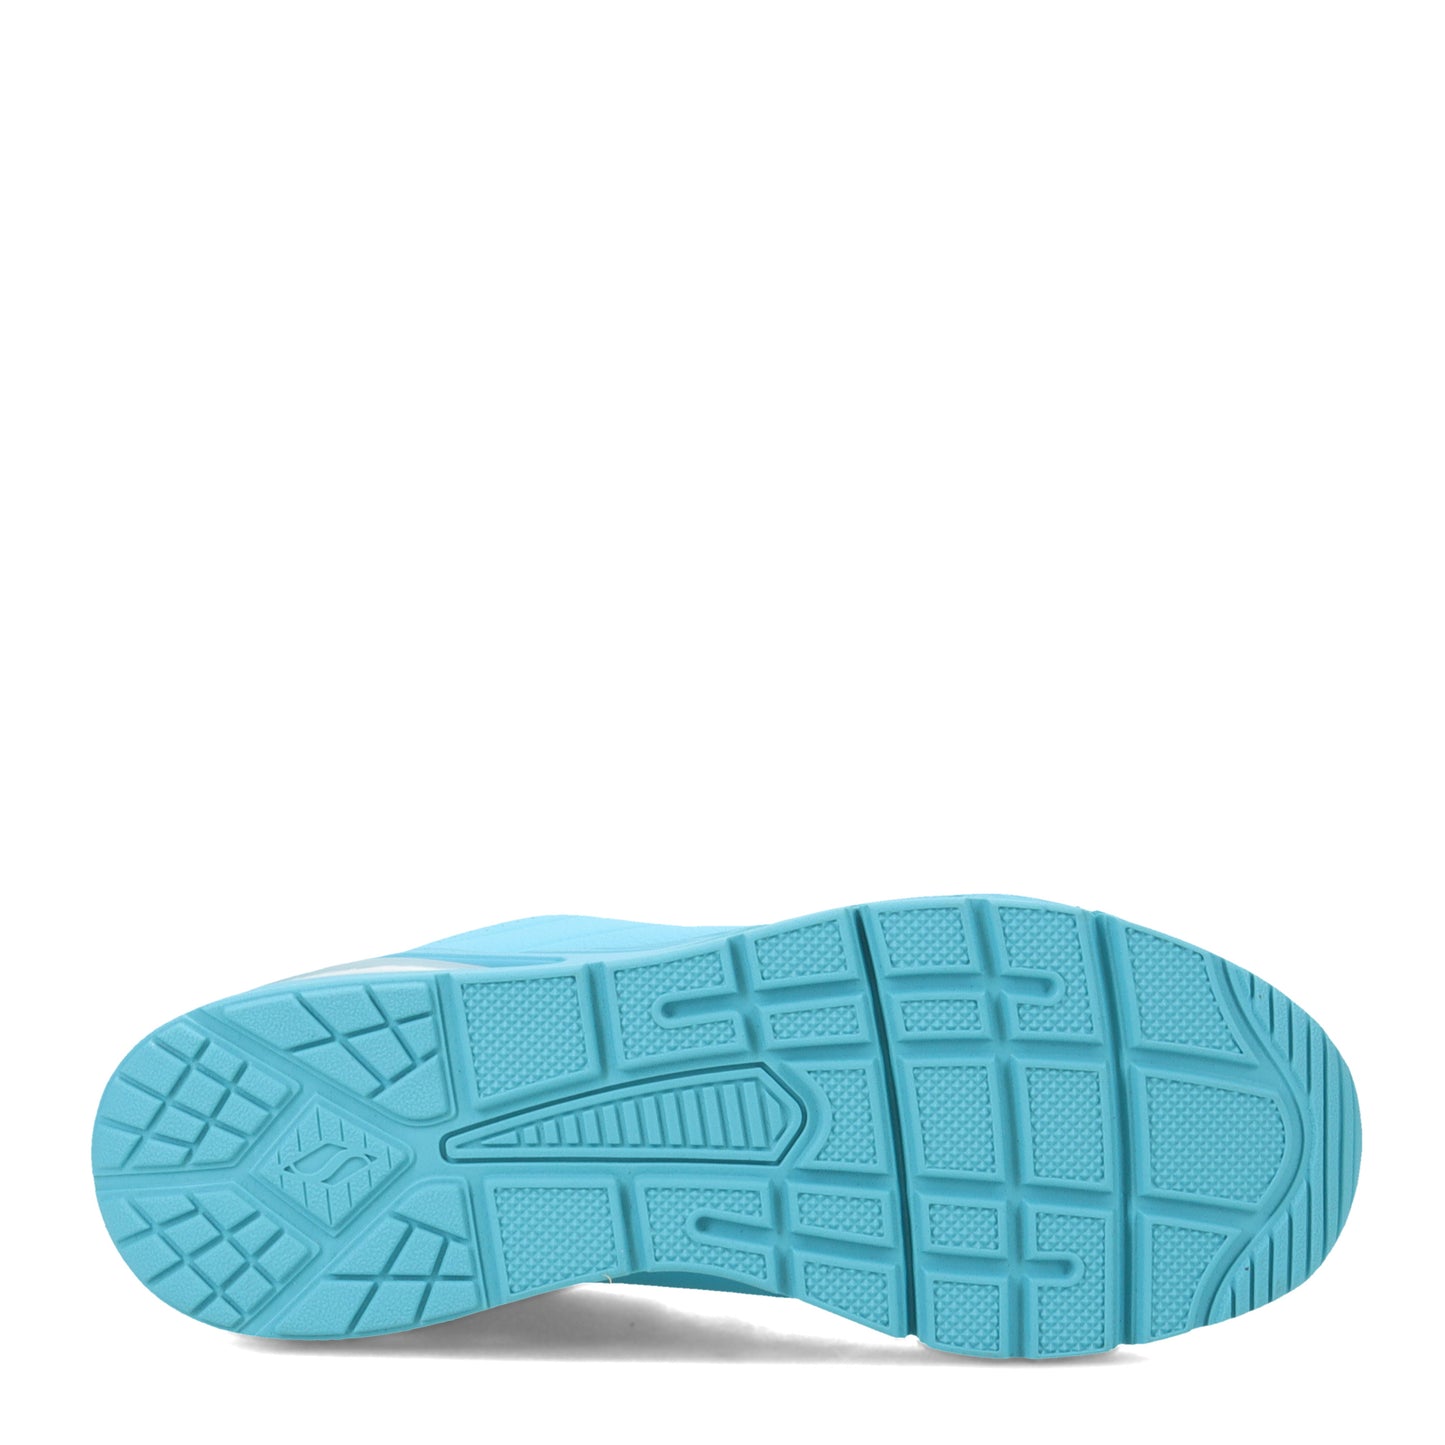 Peltz Shoes  Women's Skechers Street Uno 2 - Air Around You Sneaker Aqua 155543-AQUA